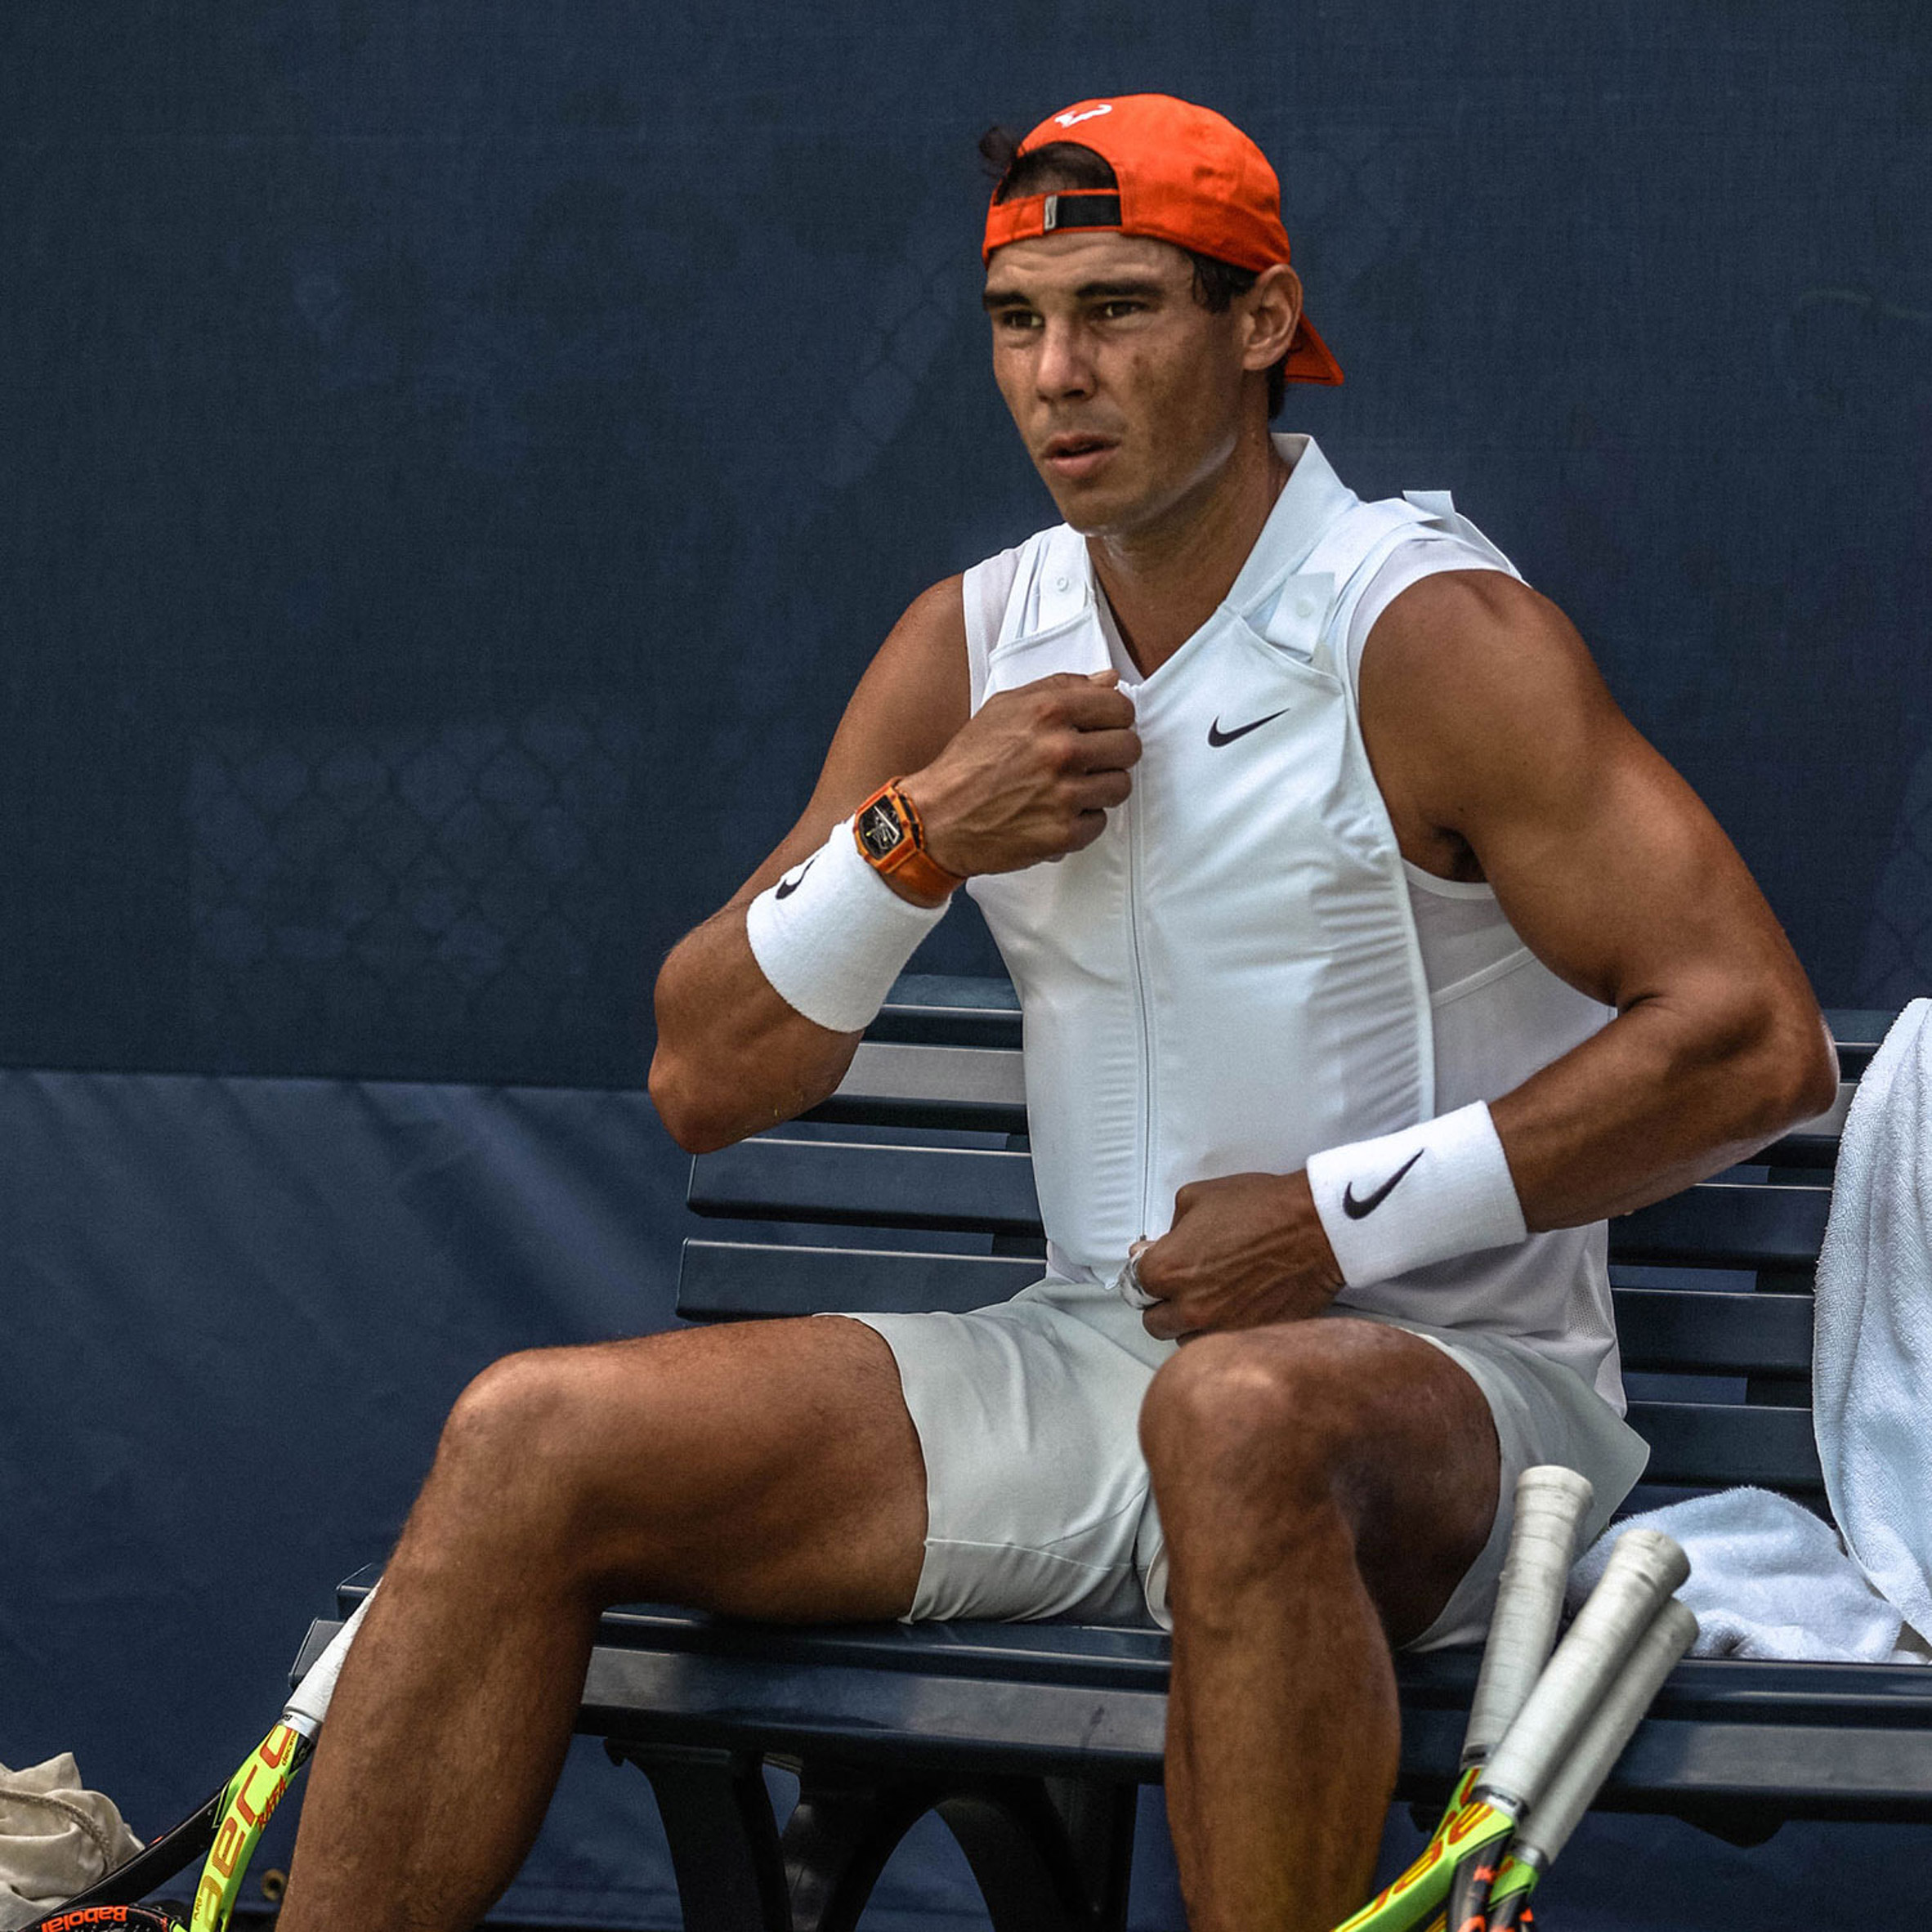 Nike vest keeps Rafael Nadal cool 